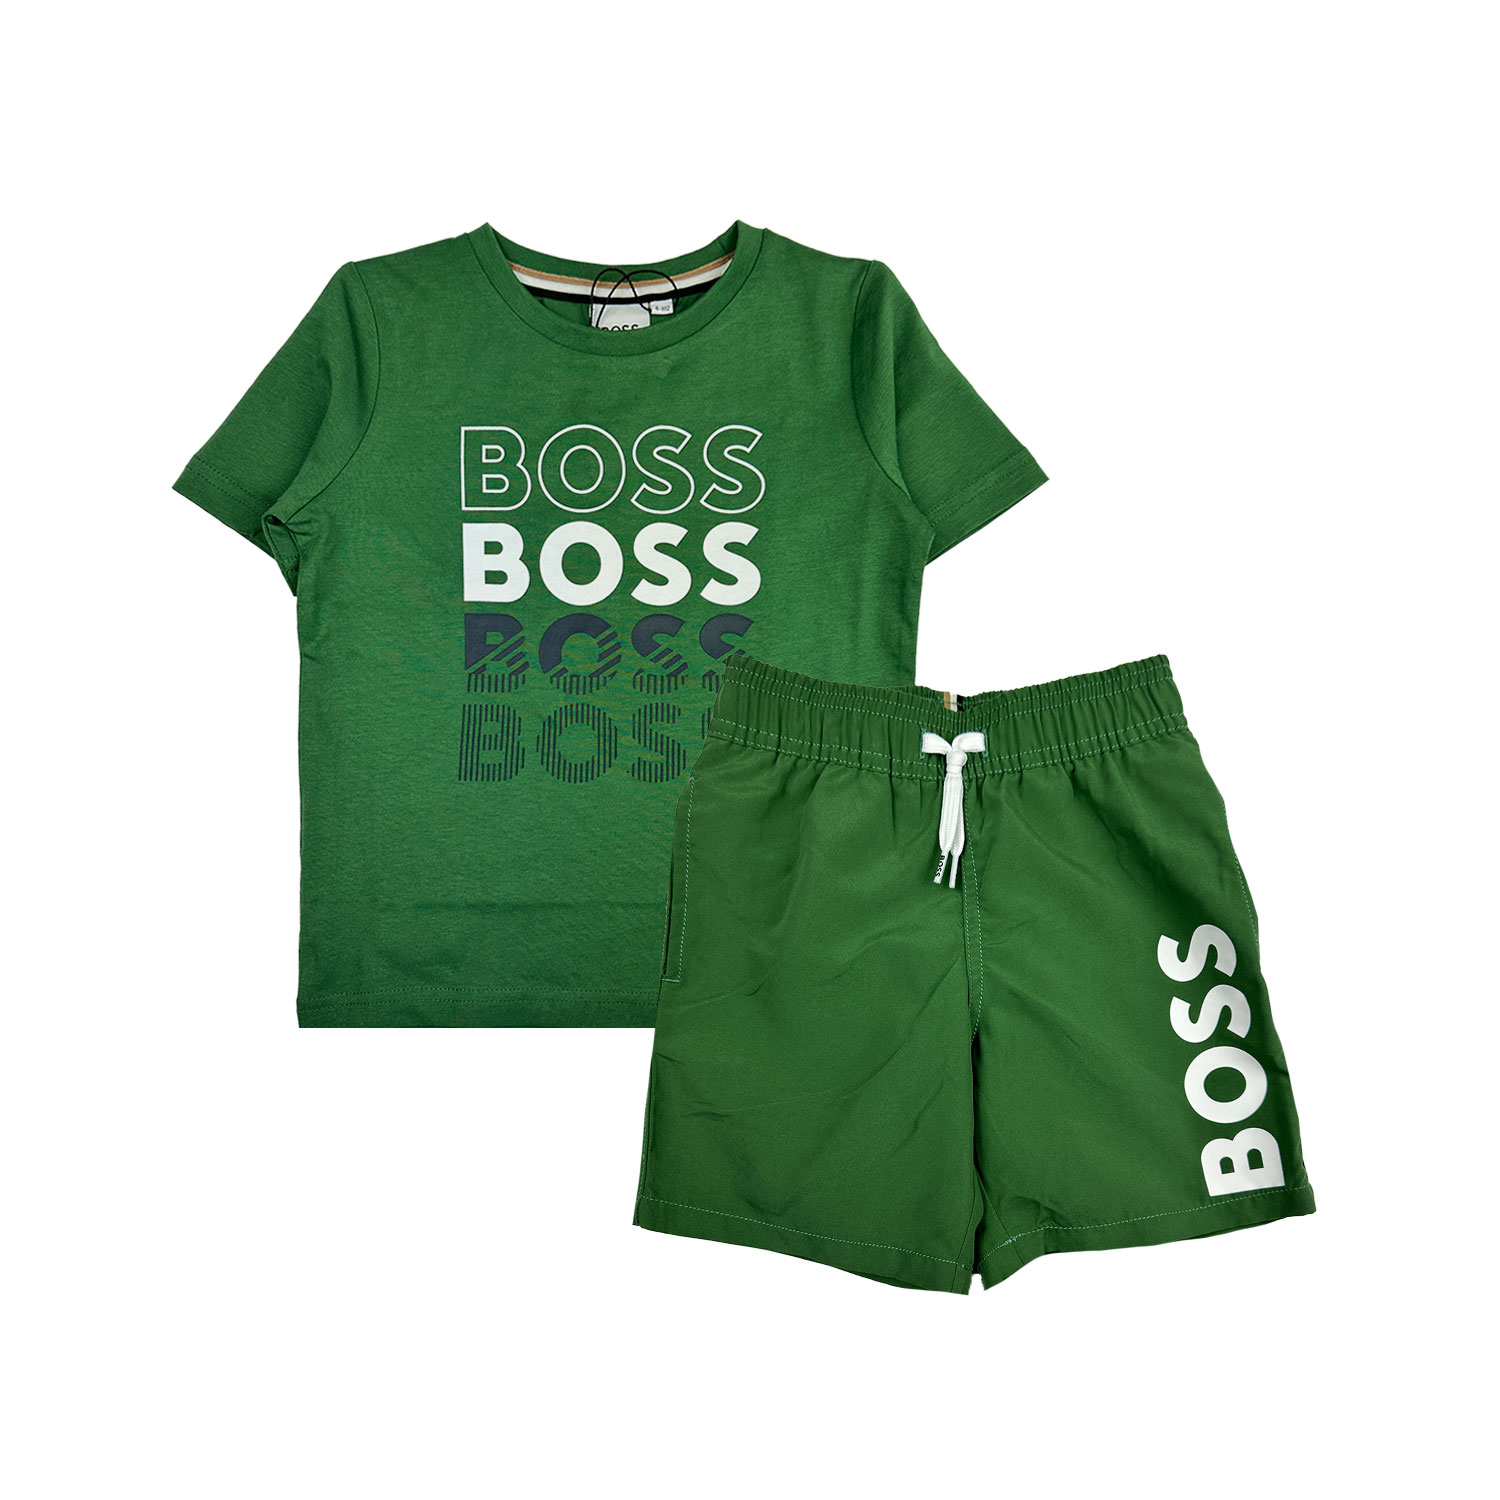 boss-set-groen